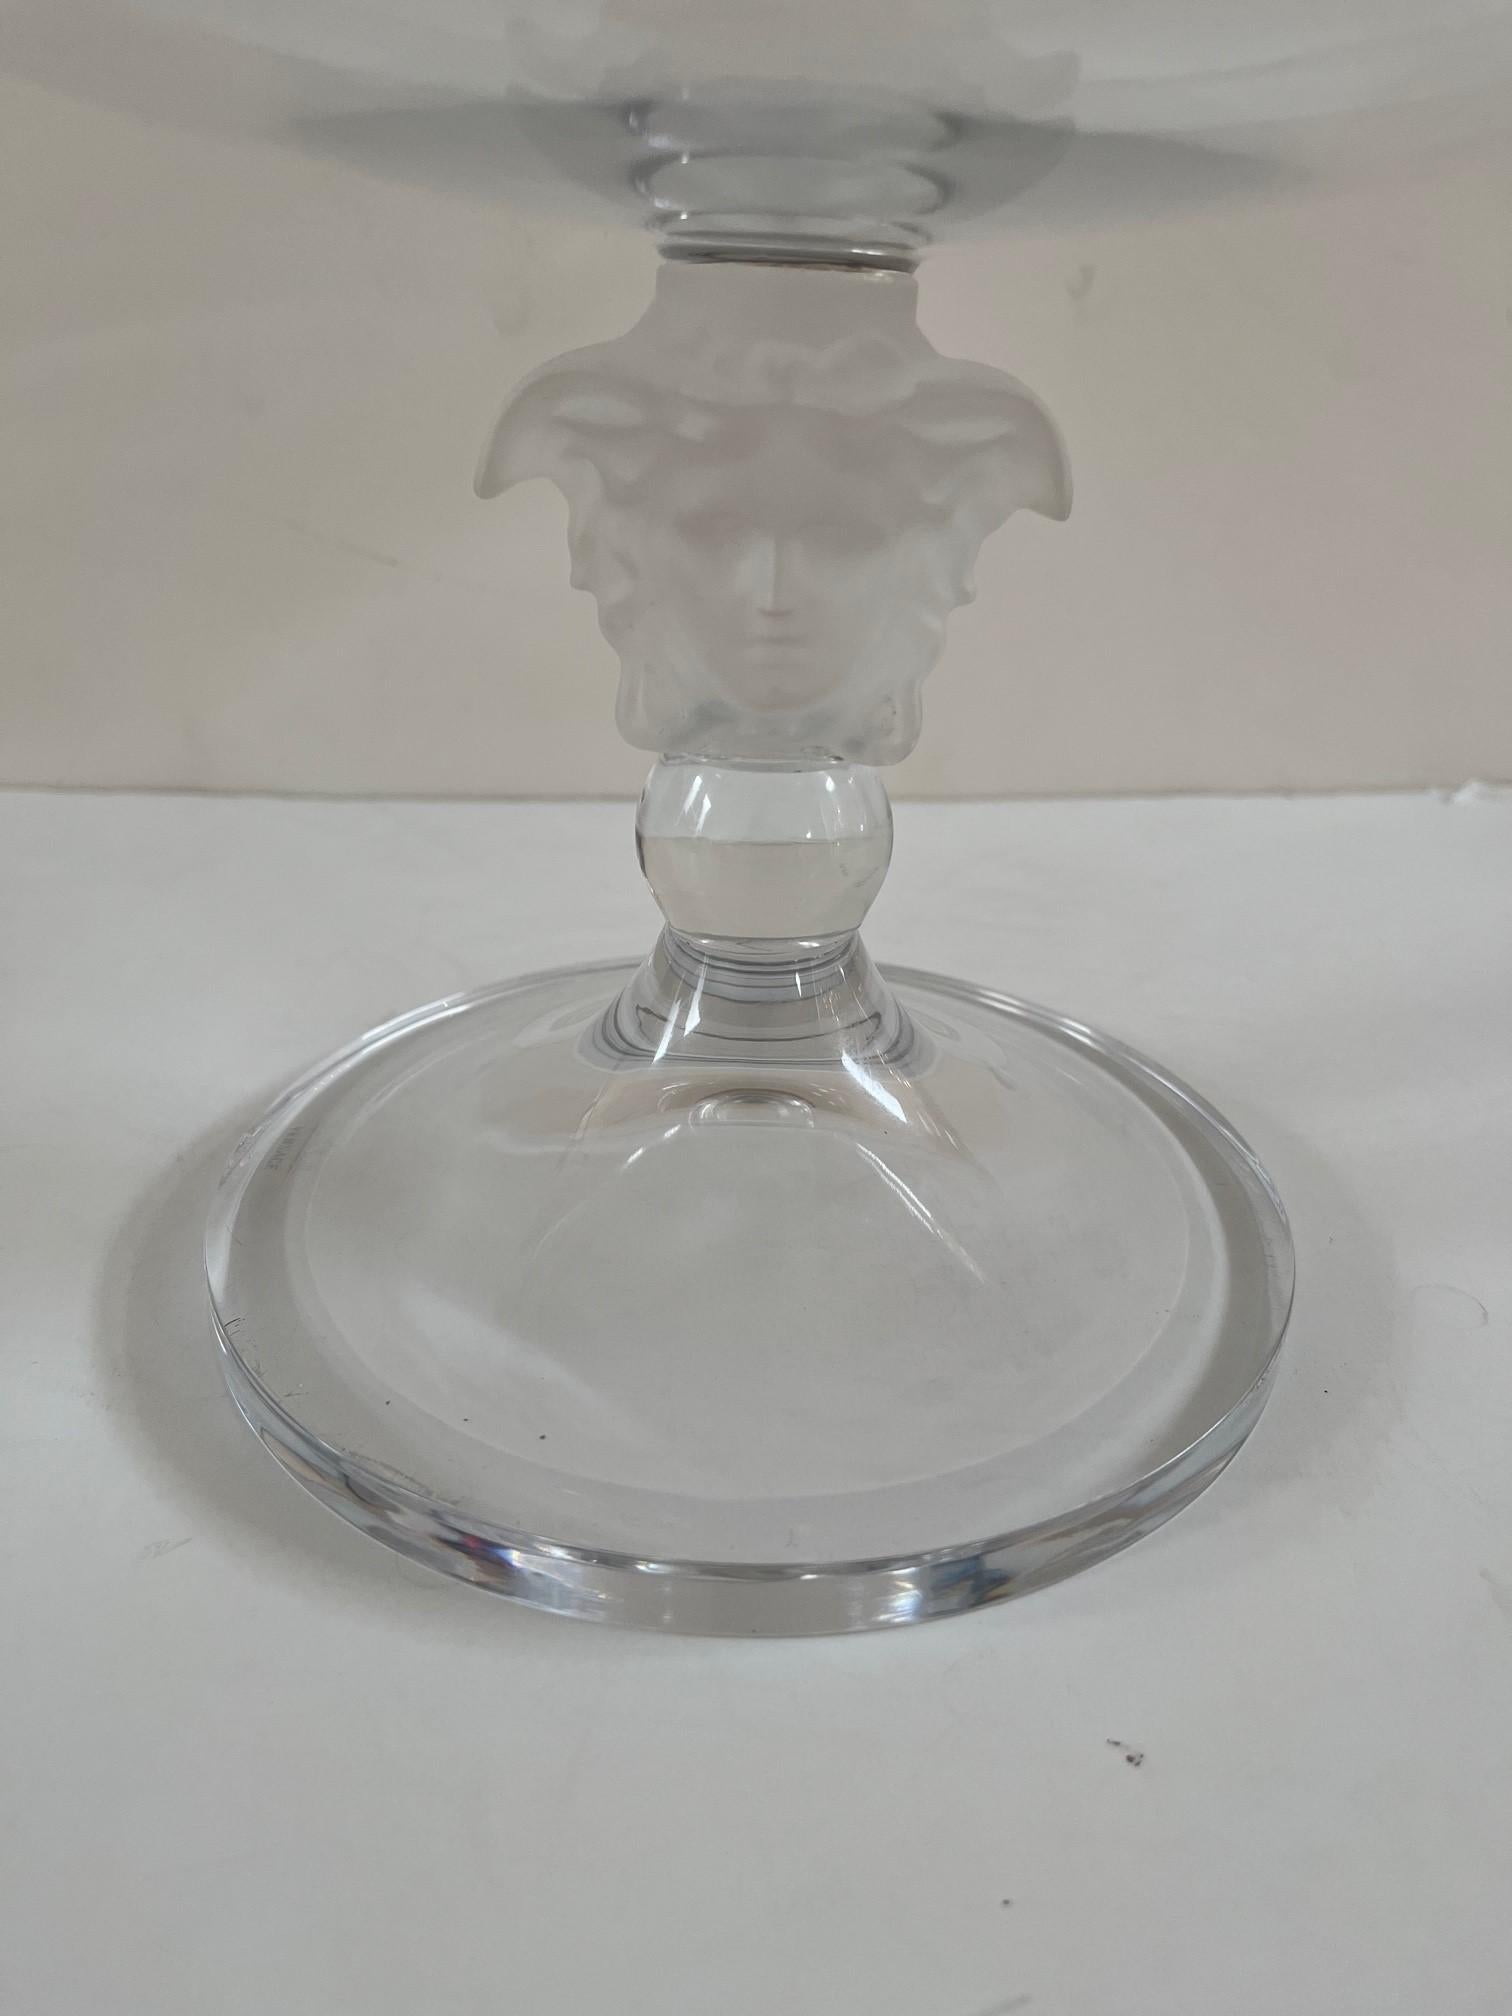 Versace Rosenthal Crystal Medusa Lumiere Footed Bowl, bol peu profond sur pied en forme de tête de méduse givrée, bol en verre transparent reposant sur une base conique étalée, dans sa boîte d'origine. 